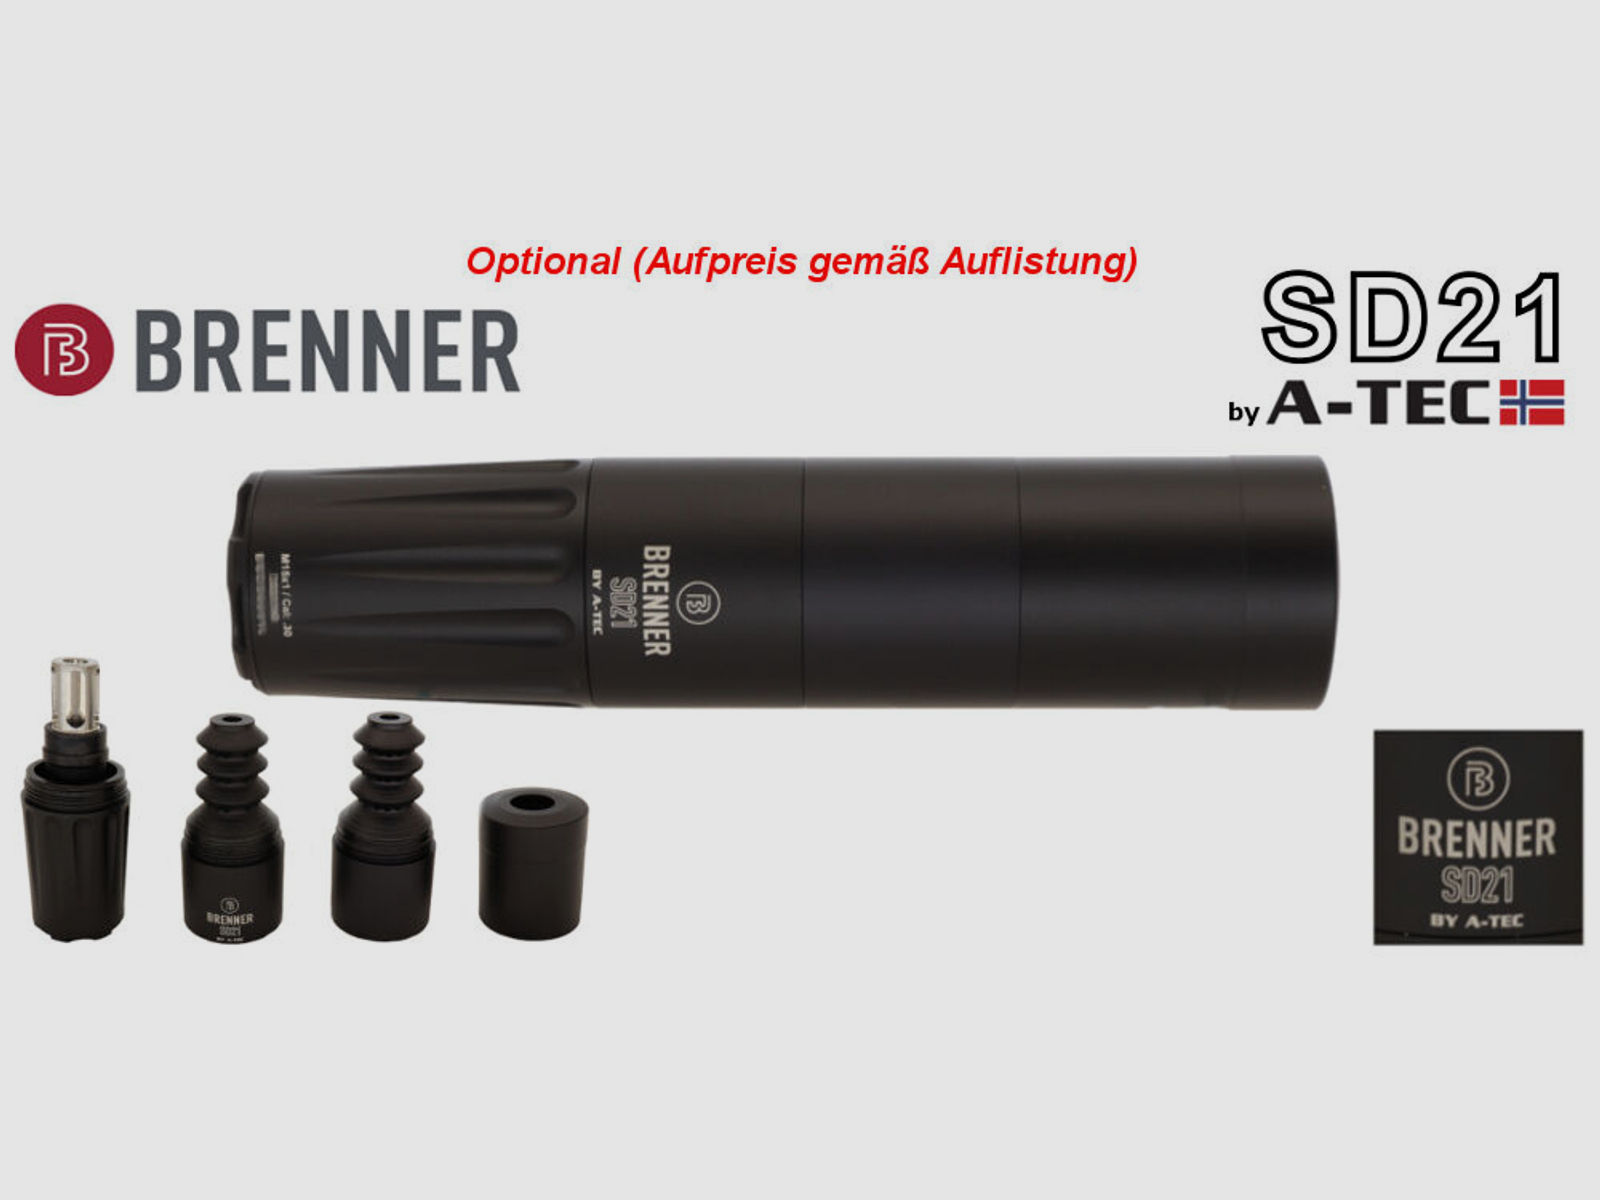 Brenner Komplettpaket:	 Brenner BR 20 Polymer schwarz mit ZF Bushnell 2.5-15x50 (m. Parallaxe Verstellung)